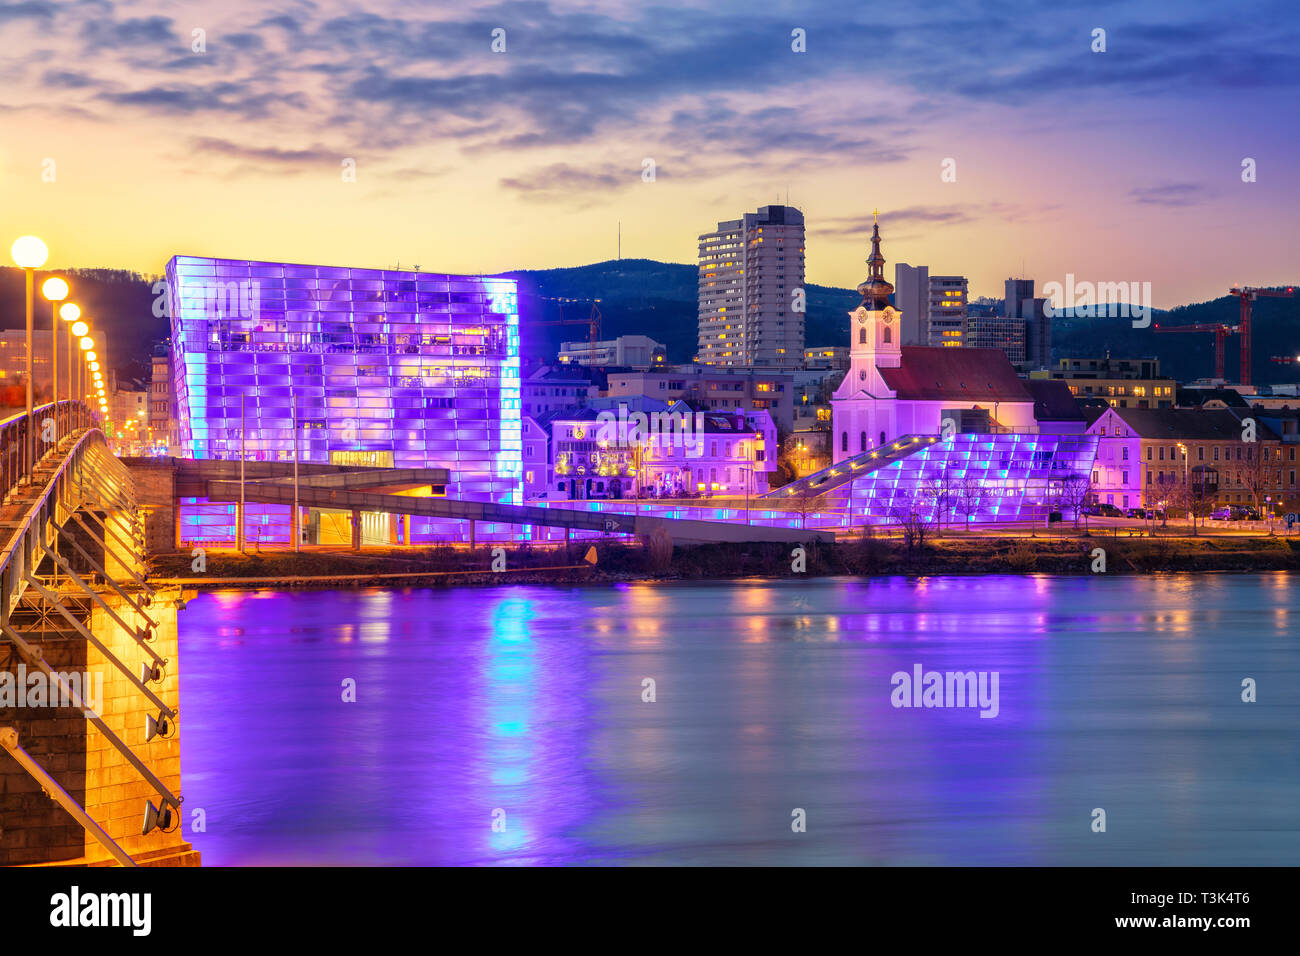 Linz, Autriche. Cityscape image de riverside Linz, Autriche pendant le crépuscule heure bleue avec la réflexion de la ville des lumières dans le Danube. Banque D'Images